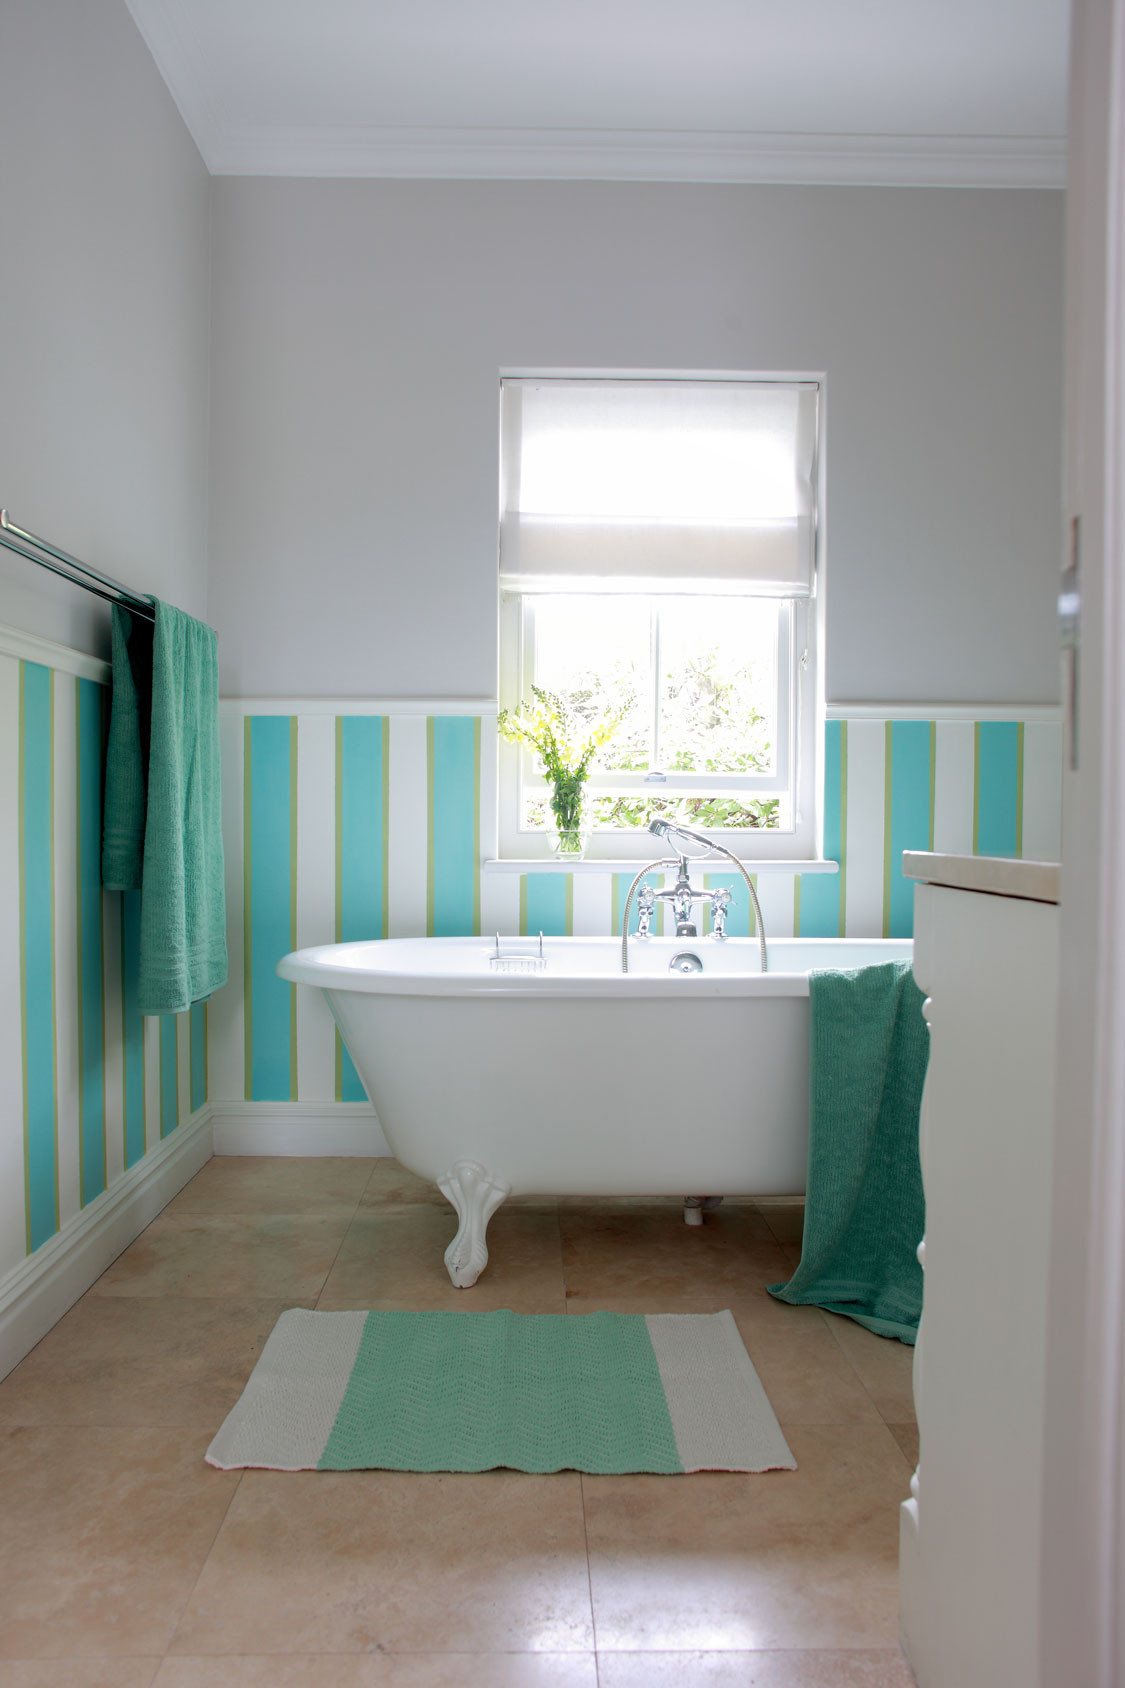 Bathroom Decor Themes
 10 Easy bathroom decor ideas